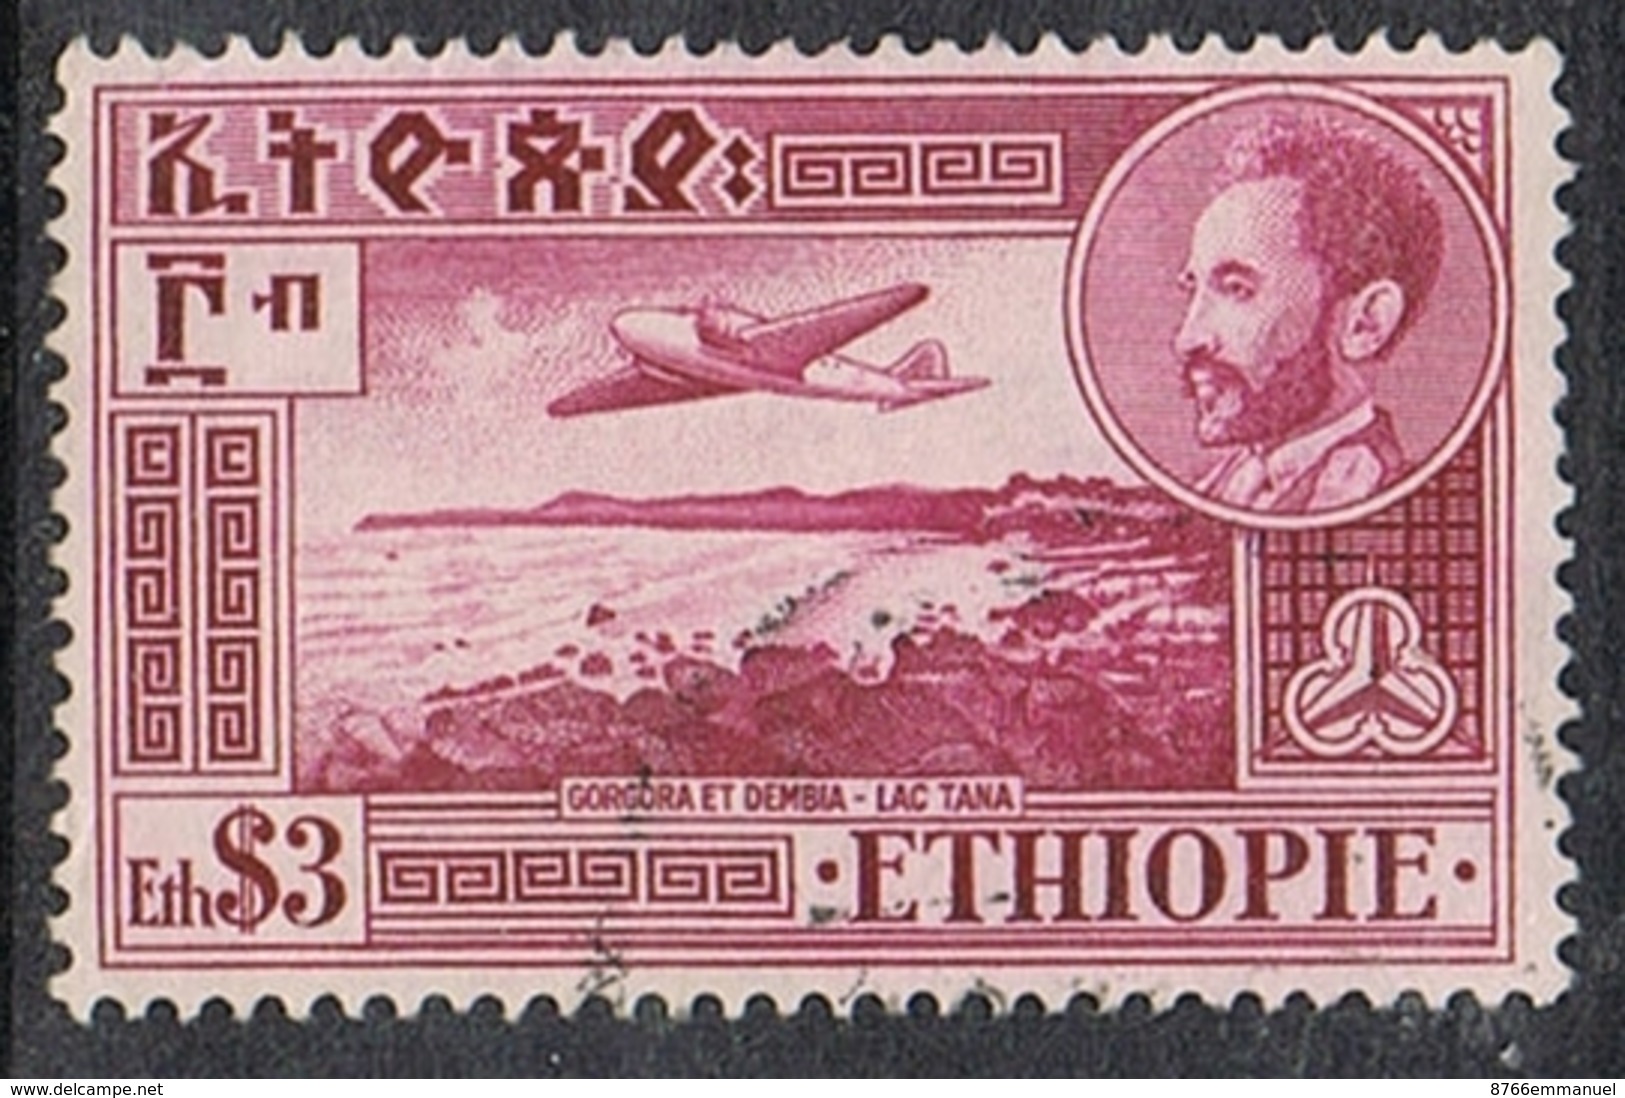 ETHIOPIE AERIEN N°28 - Etiopía